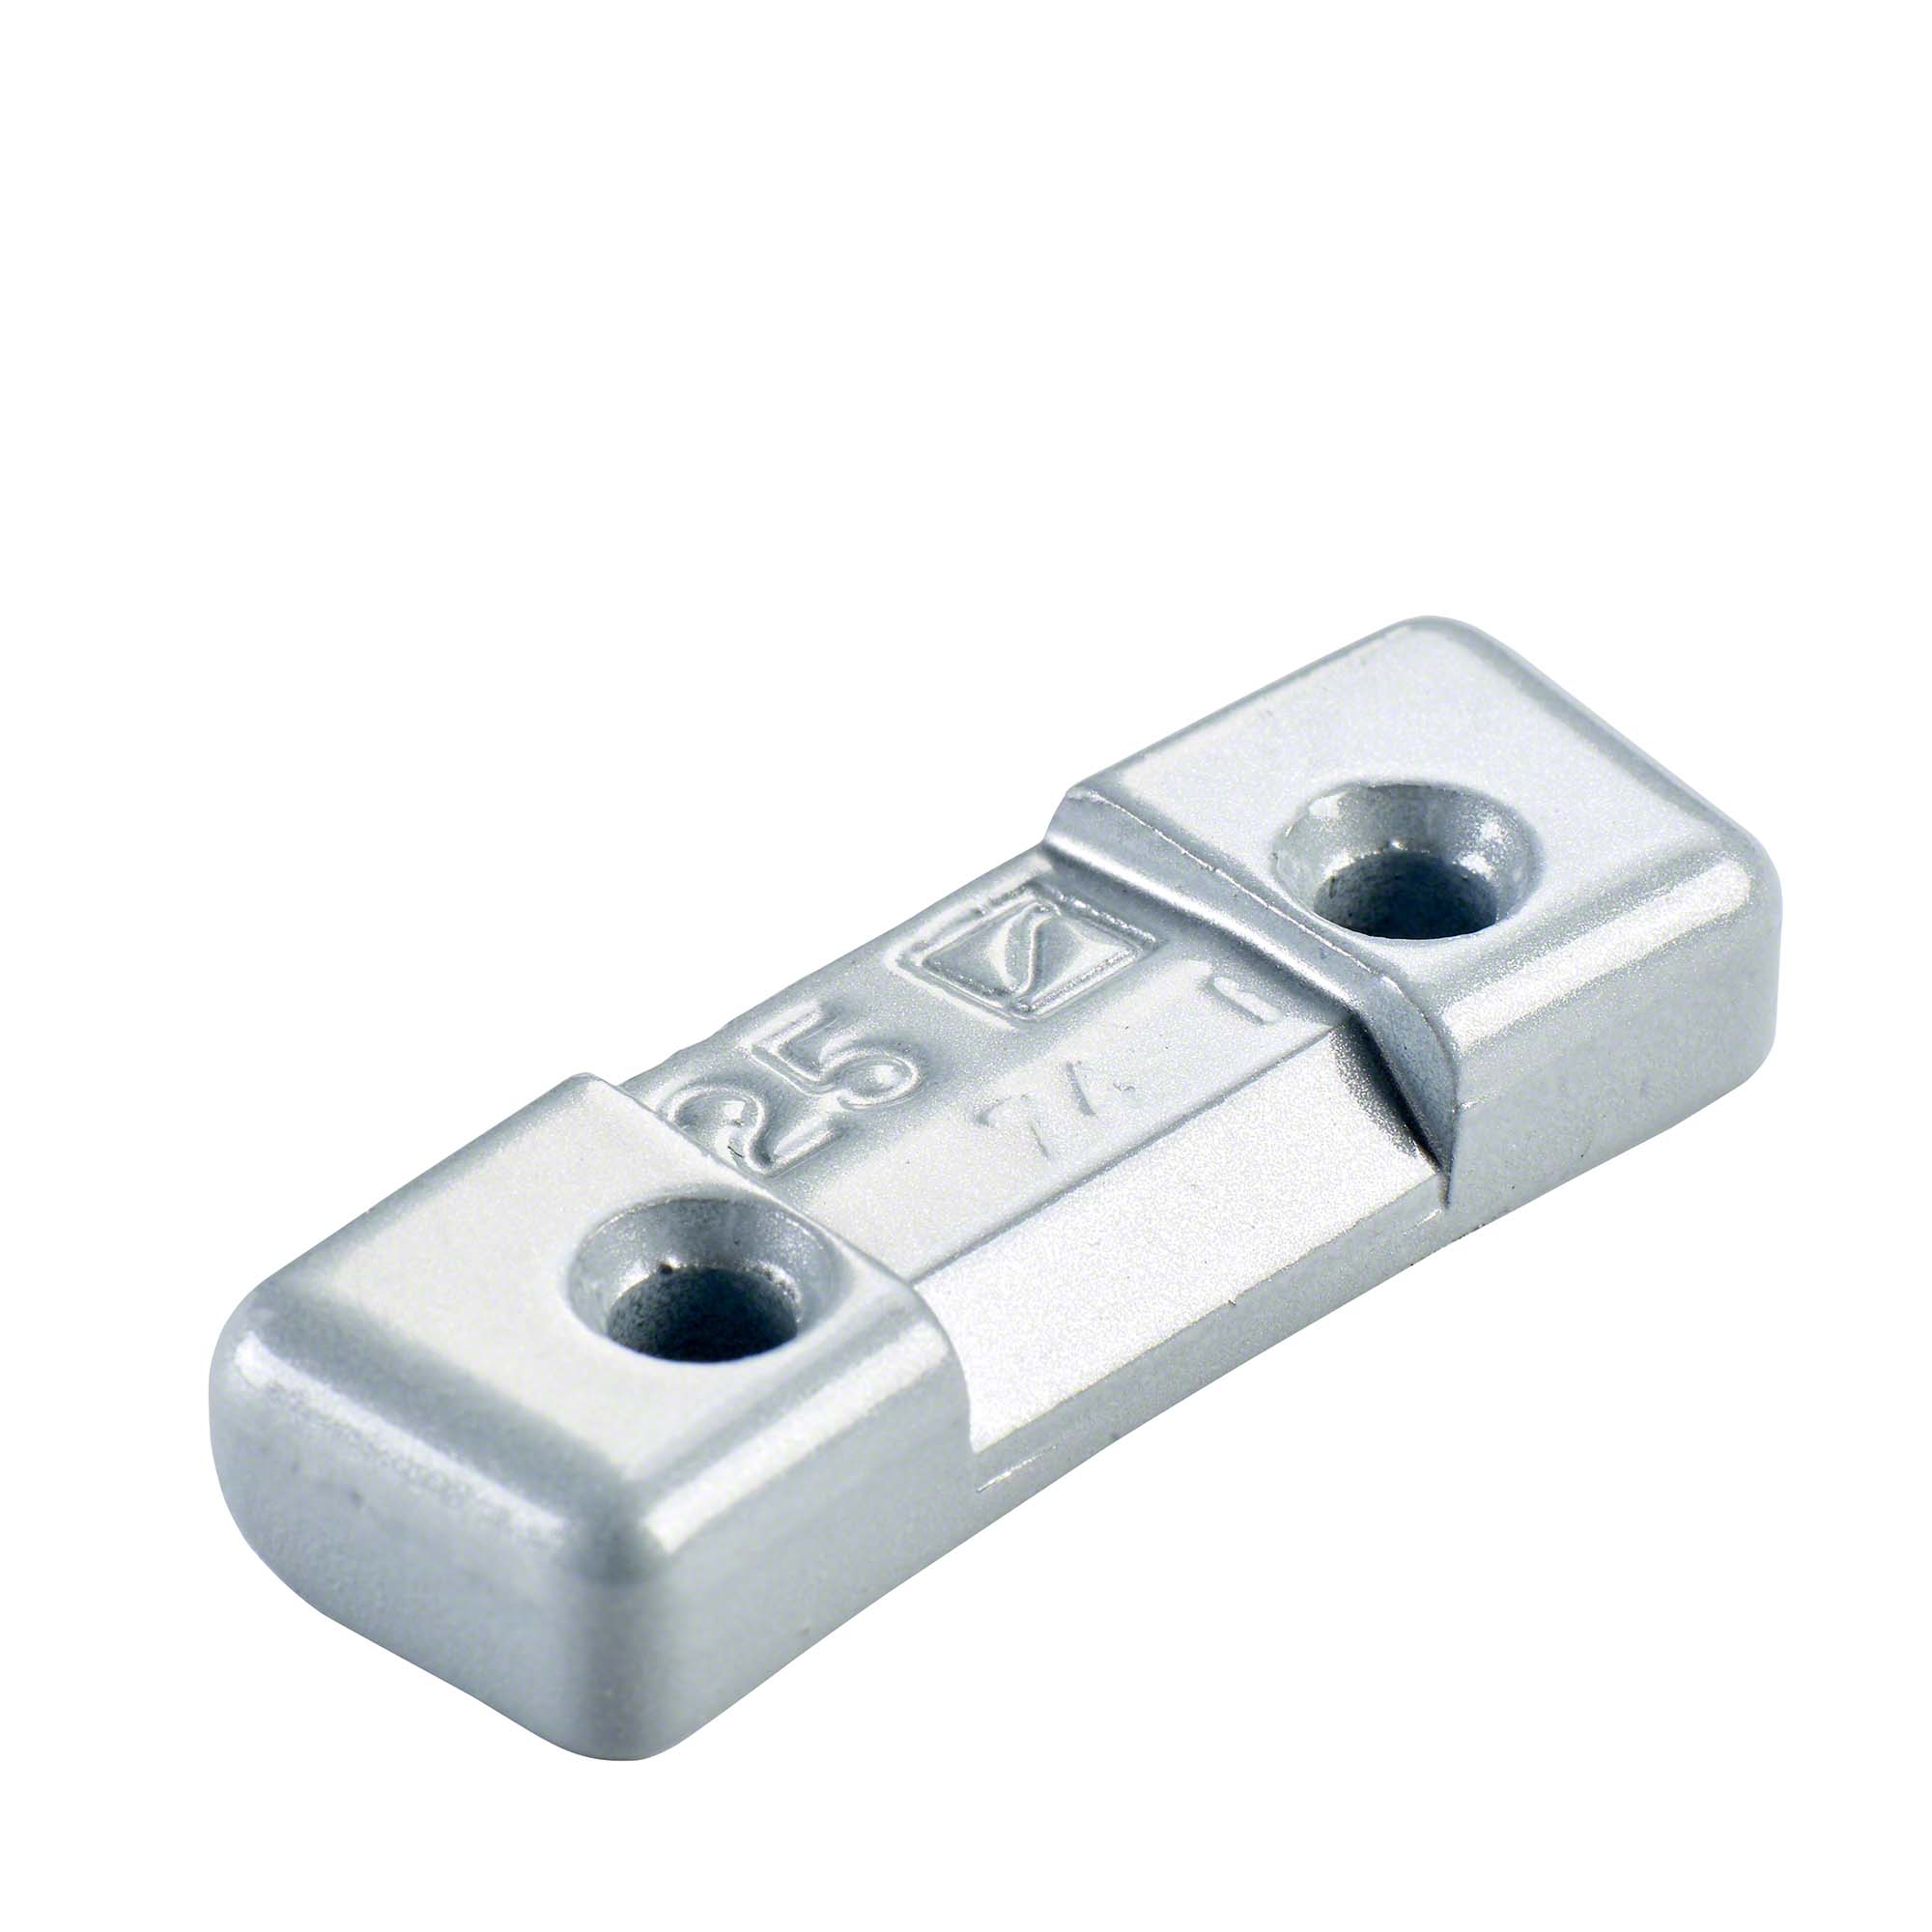 Safety weight - Typ 274, 25 g, zinc, silver